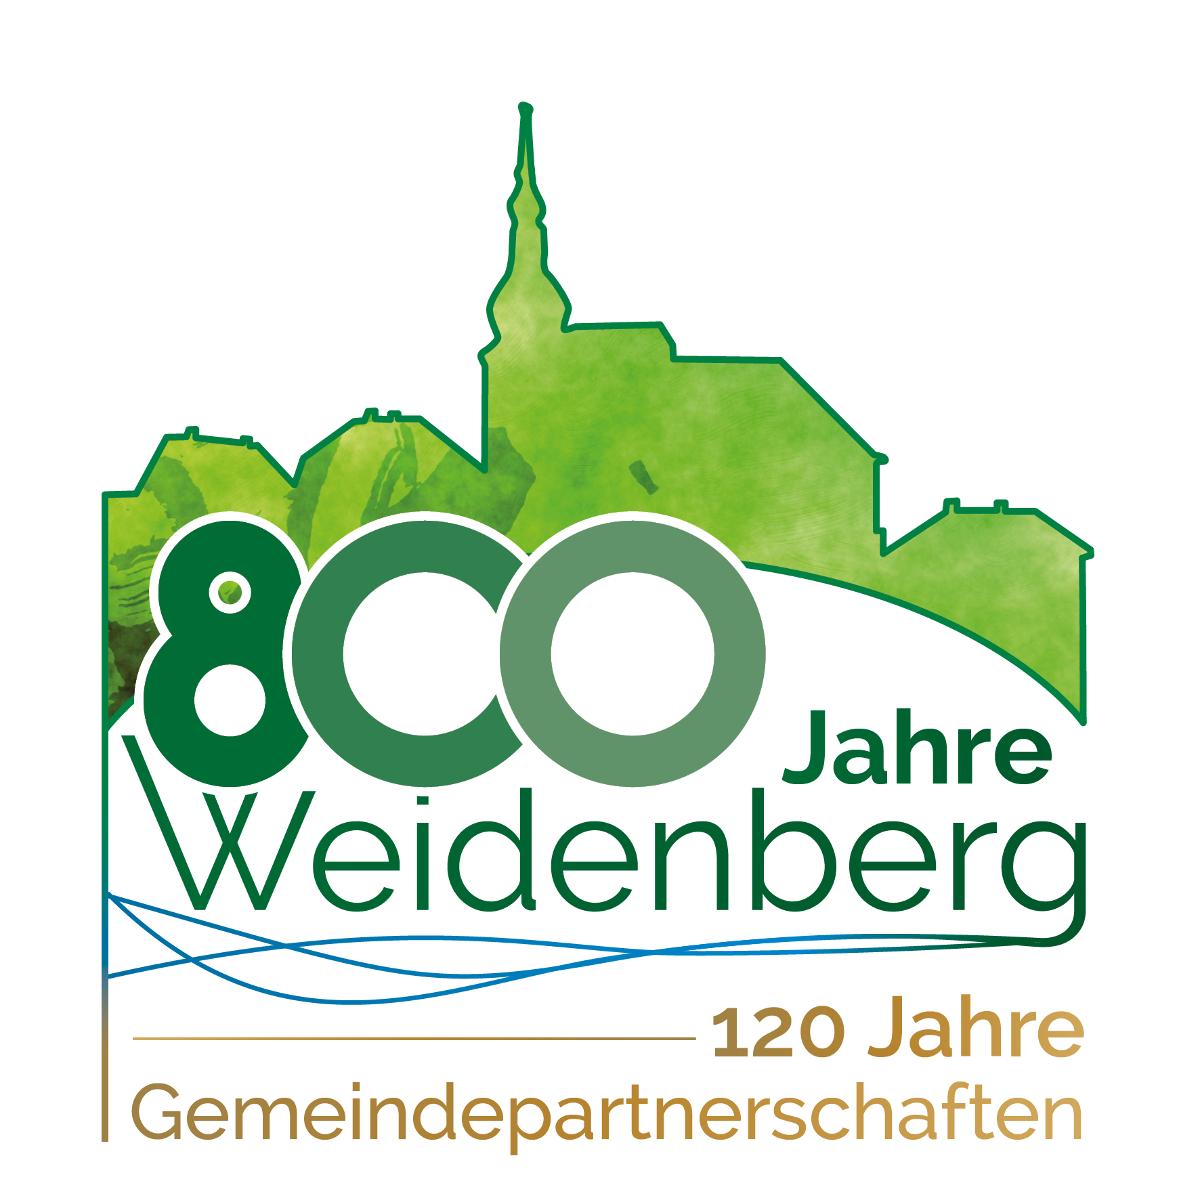 Weidenberg ist staatlich anerkannter Erholungsort und liegt mit seinen 6.150 Einwohnern 420 bis 810 m ü. N. N.